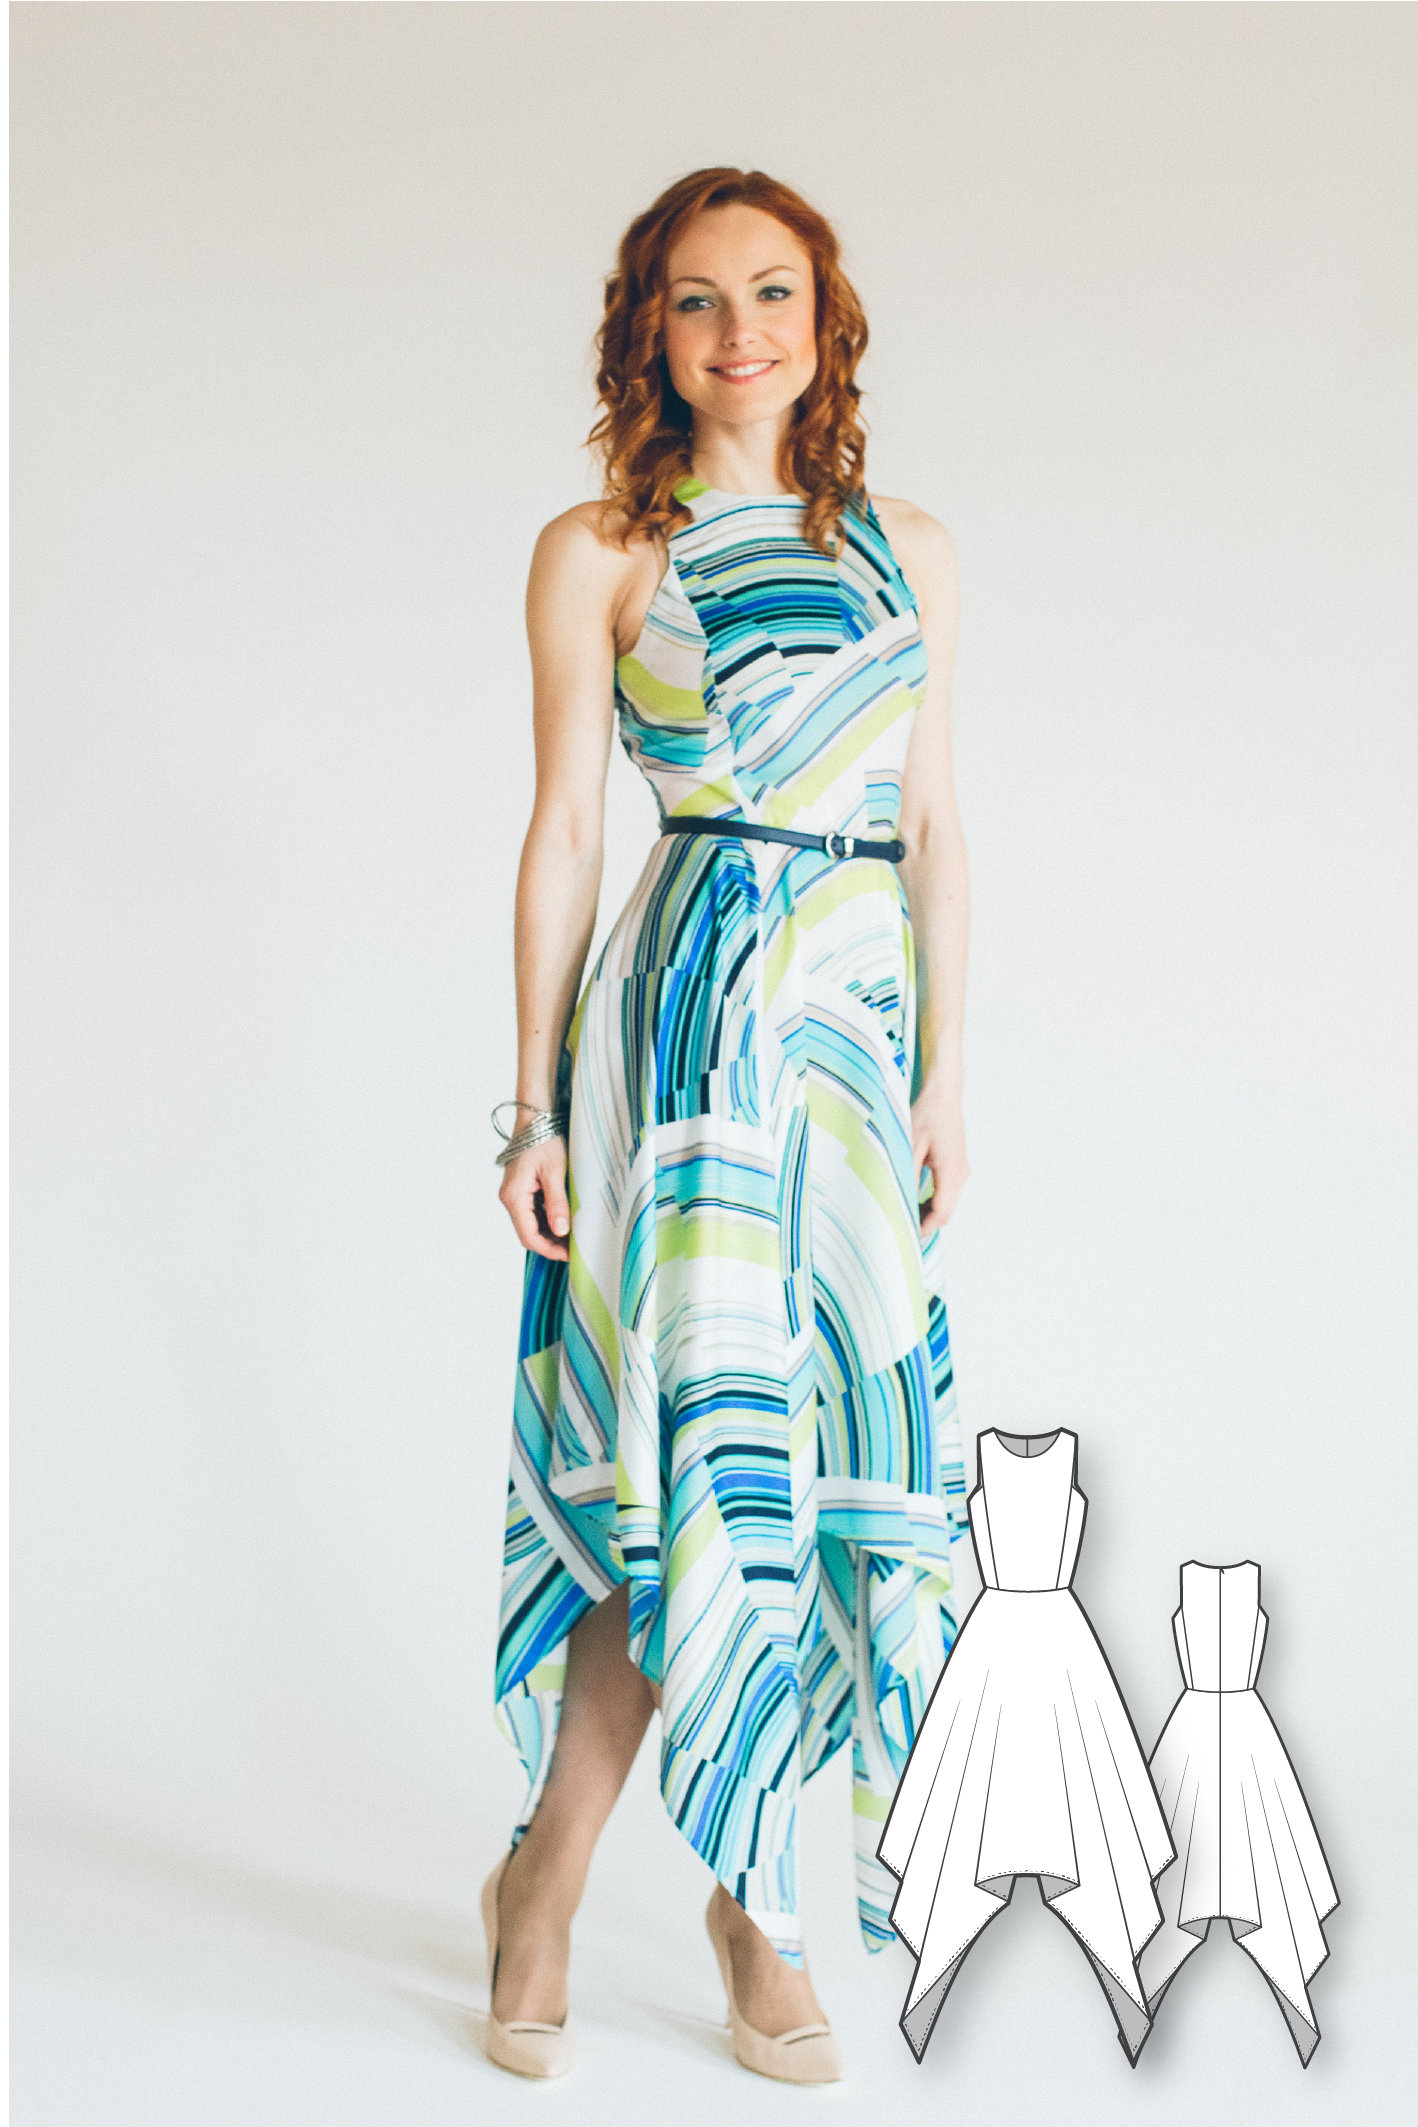 Dress Pattern - Dress Sewing Patterns - Sewing Tutorials - Maxi Dress Pattern - PDF Sewing Patterns - Sewing Projects - Sewing Patterns